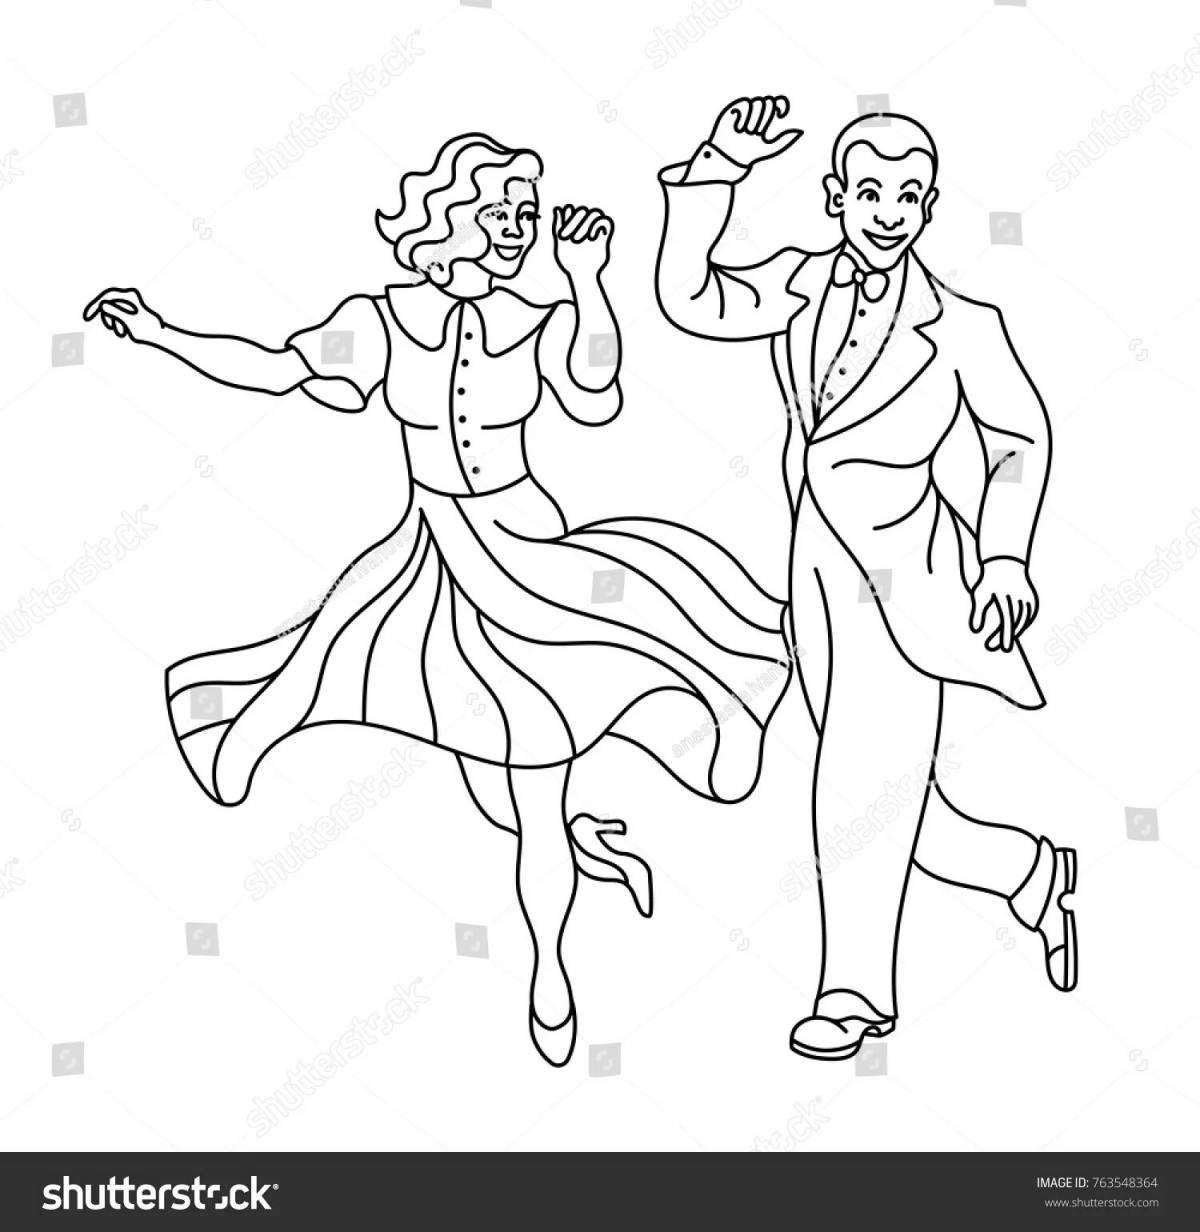 Delicate figures for ballroom dancing